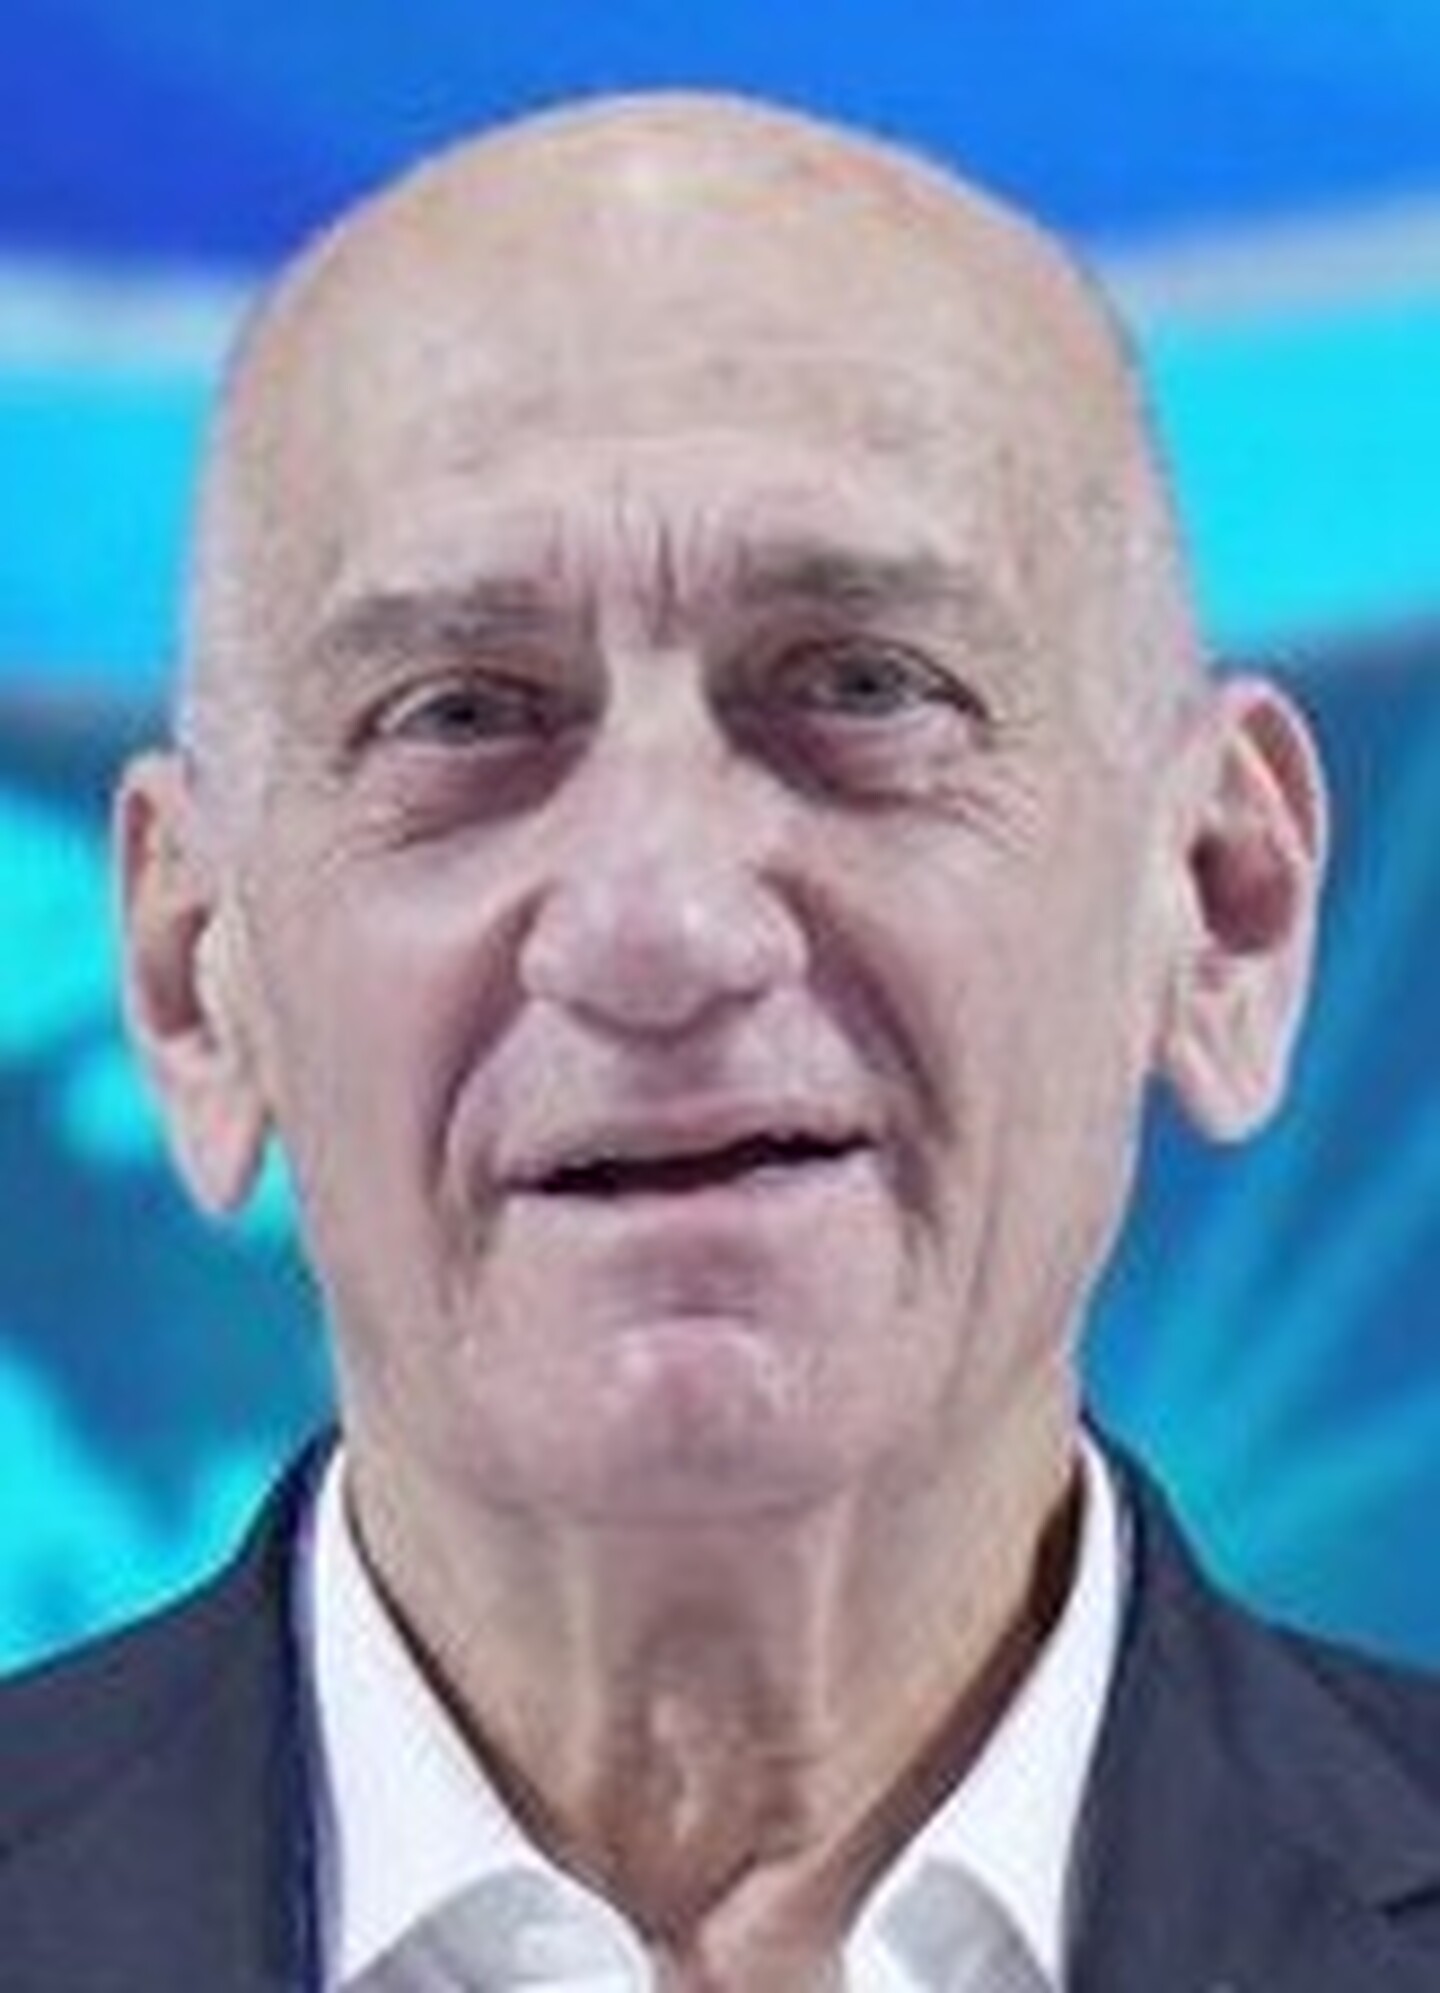 World Summit 2022 Ehud Olmert 110222 cr